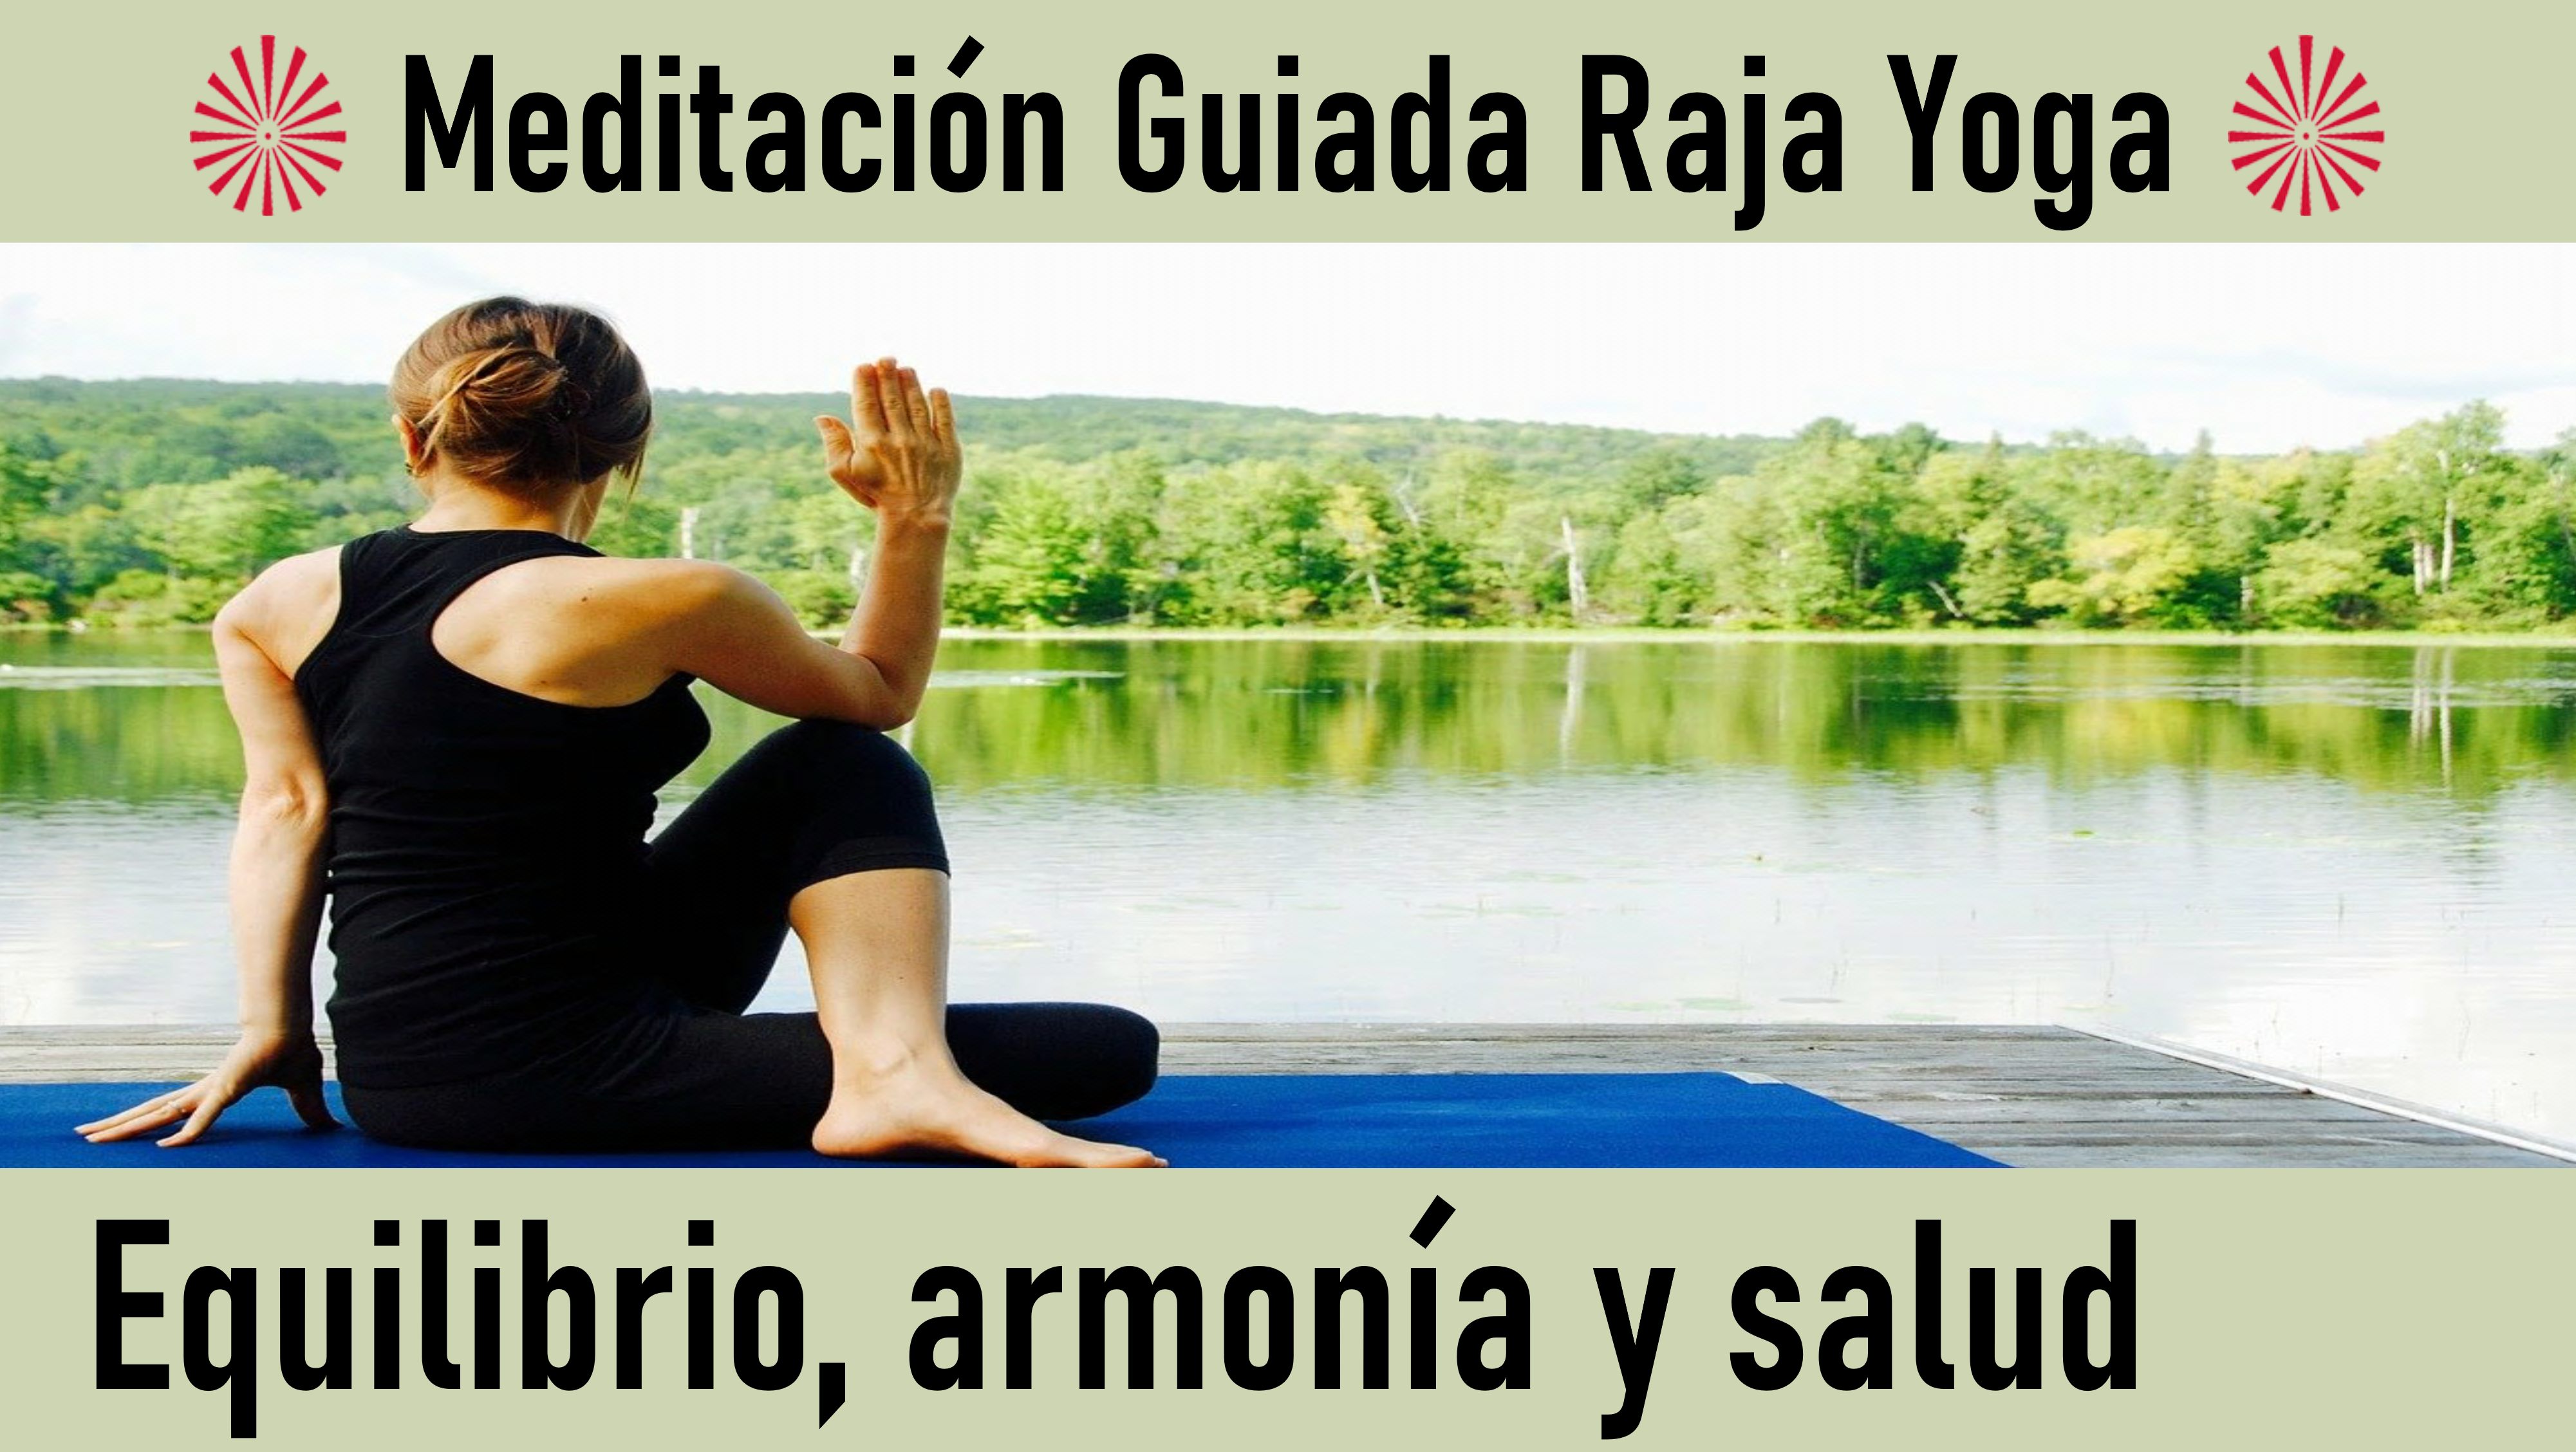 Meditación Raja Yoga: “Equilibrio, Armonía y Salud“ (16 Mayo 2020) On-line desde Valencia